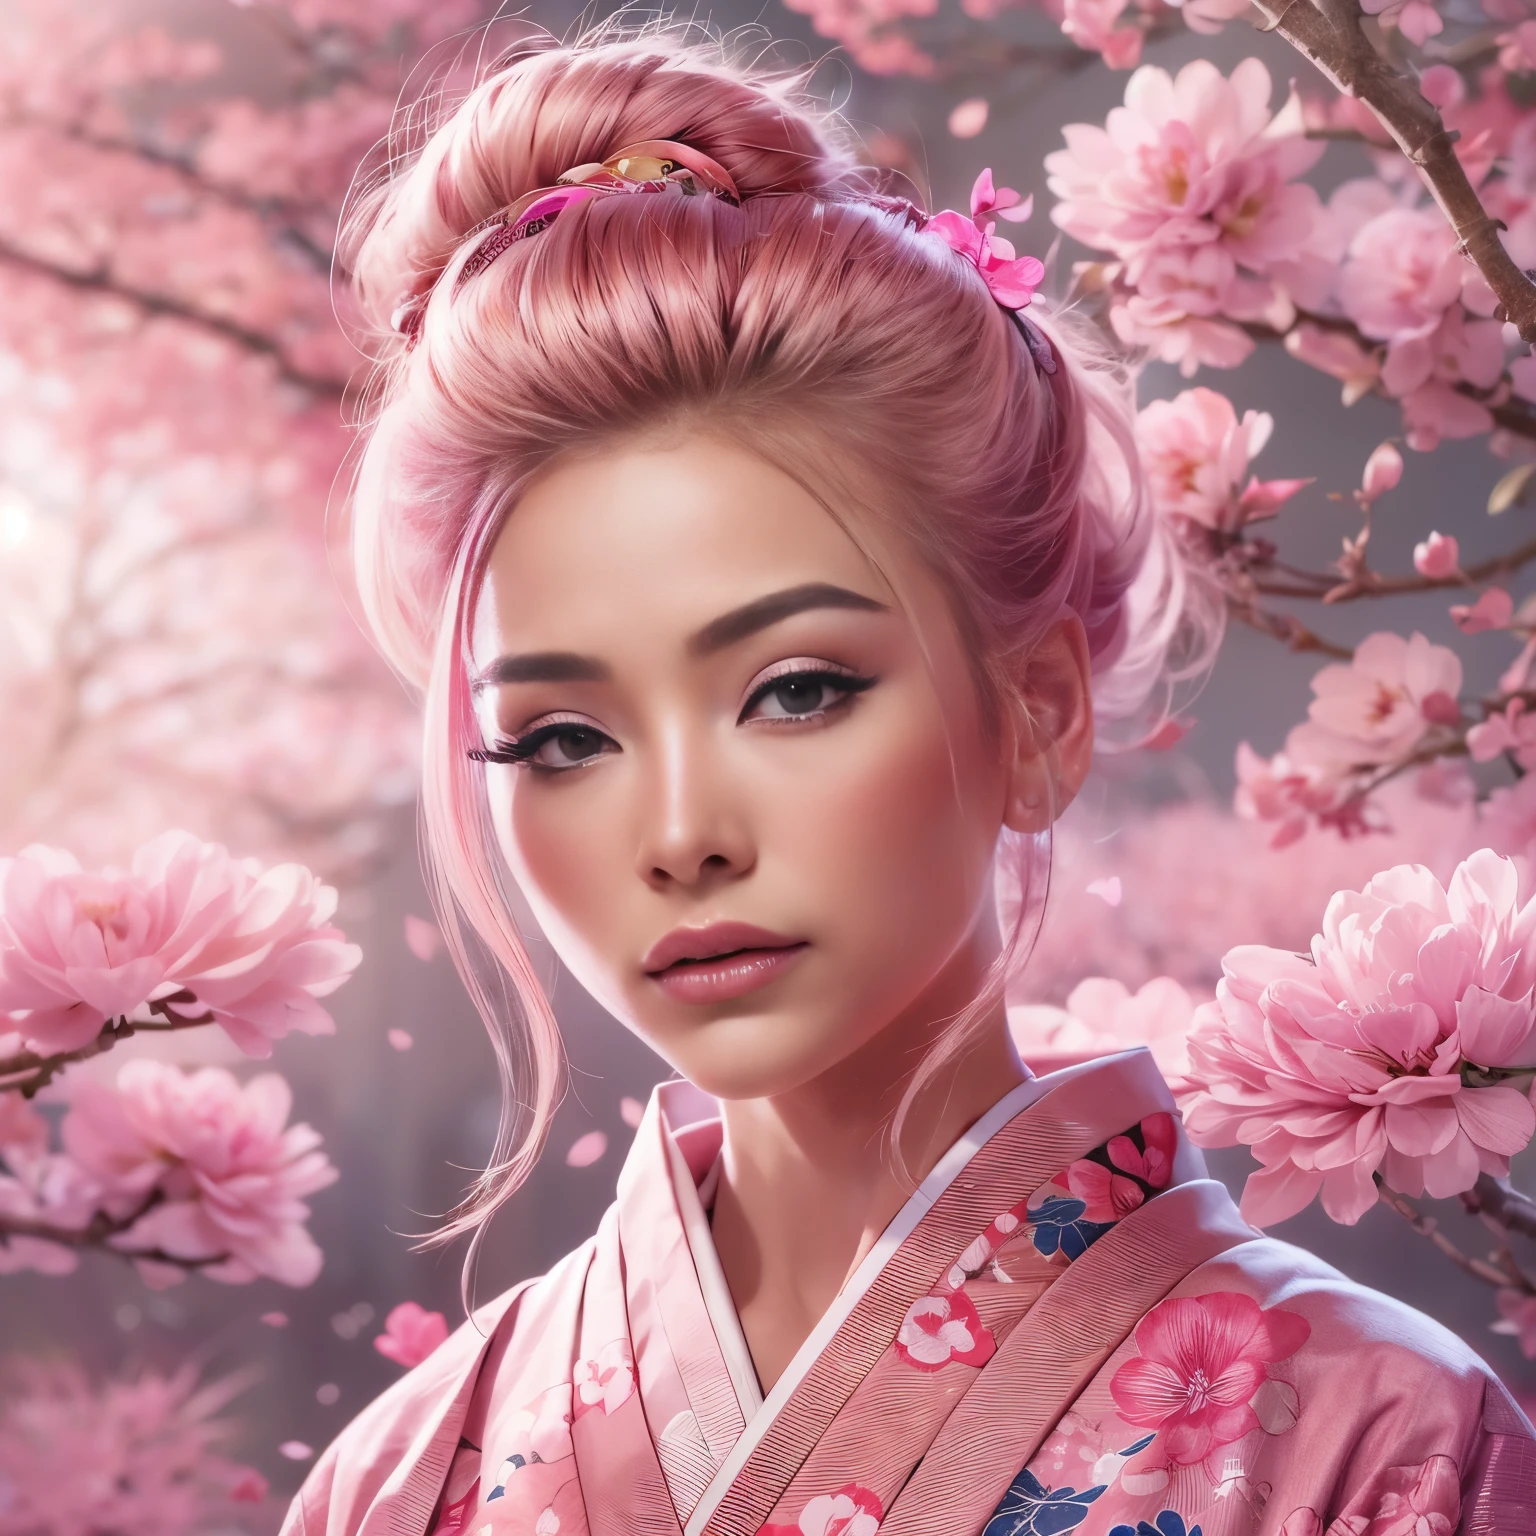 Гиперреалистичный, очень подробный, и изображение молодого человека в высоком разрешении 16k., красивая женщина с английским лицом. у нее розовый пучок волос и полупрозрачная кожа, и одет в традиционное розовое японское кимоно с небольшим цветочным узором.. Изображение передает неземную красоту и загадочность духовного мира.. Стиль, вдохновленный нежностью, мягкая эстетика традиционного японского искусства. Фон был полон розового дерева сакуры с розовым освещением..